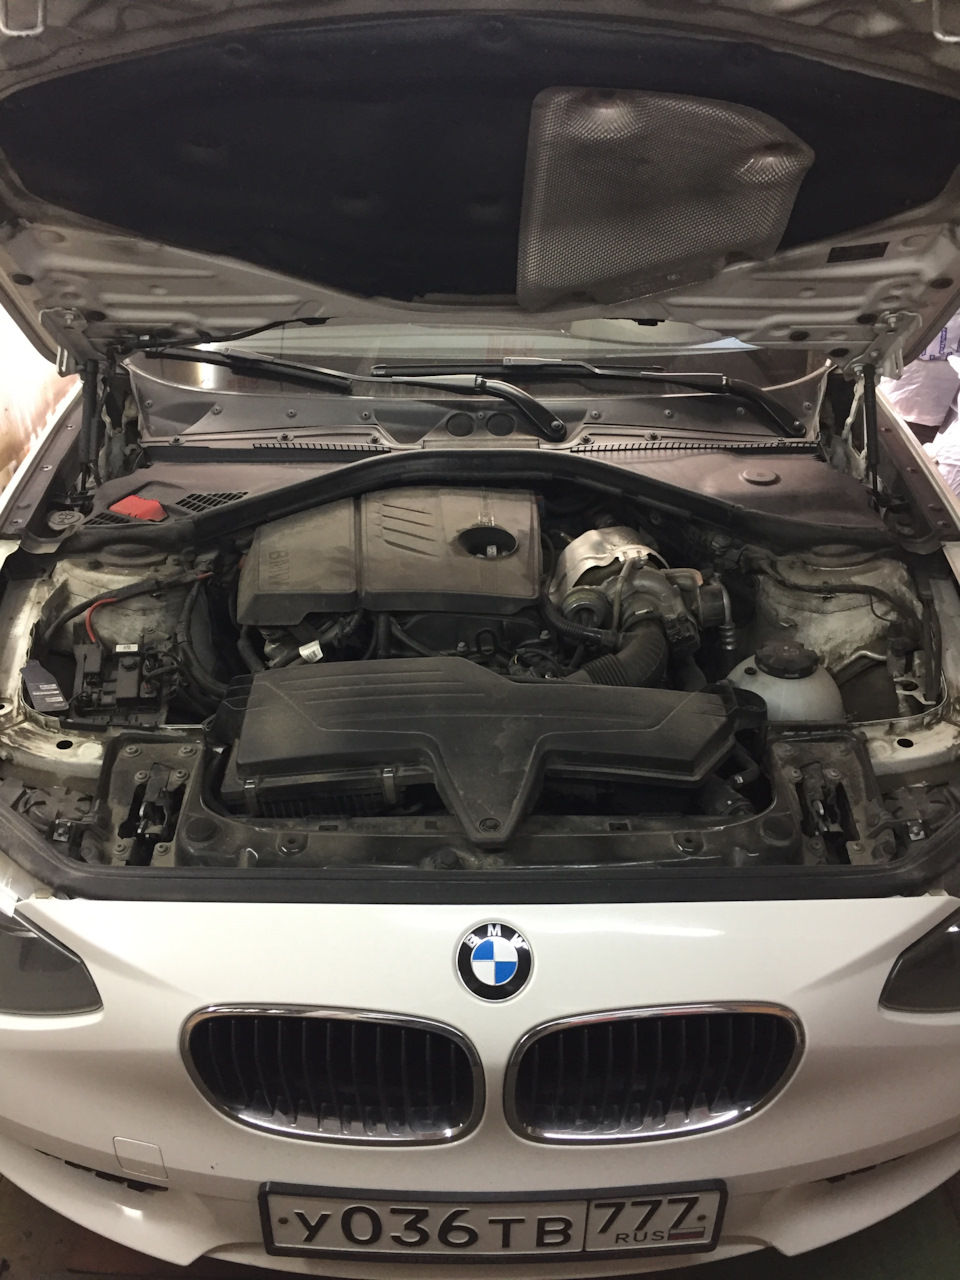 Как самостоятельно заменить масло в АКПП на BMW f30?